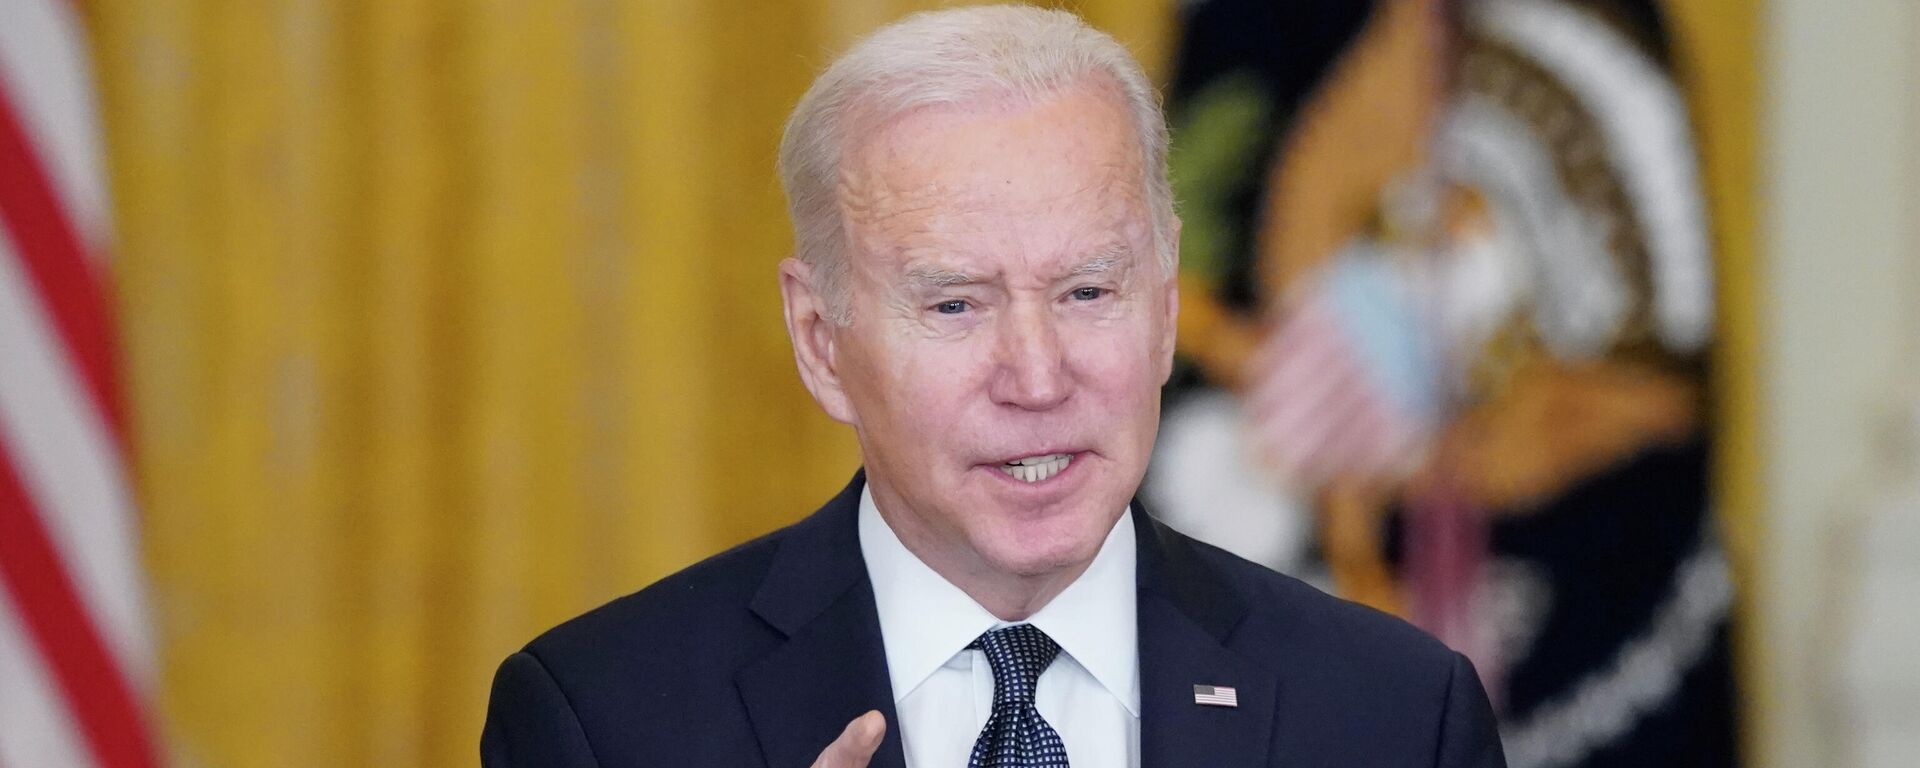 O presidente dos EUA, Joe Biden, fala à imprensa sobre a crise na Ucrânia na Casa Branca, em Washington, em 15 de fevereiro de 2022 - Sputnik Brasil, 1920, 15.02.2022